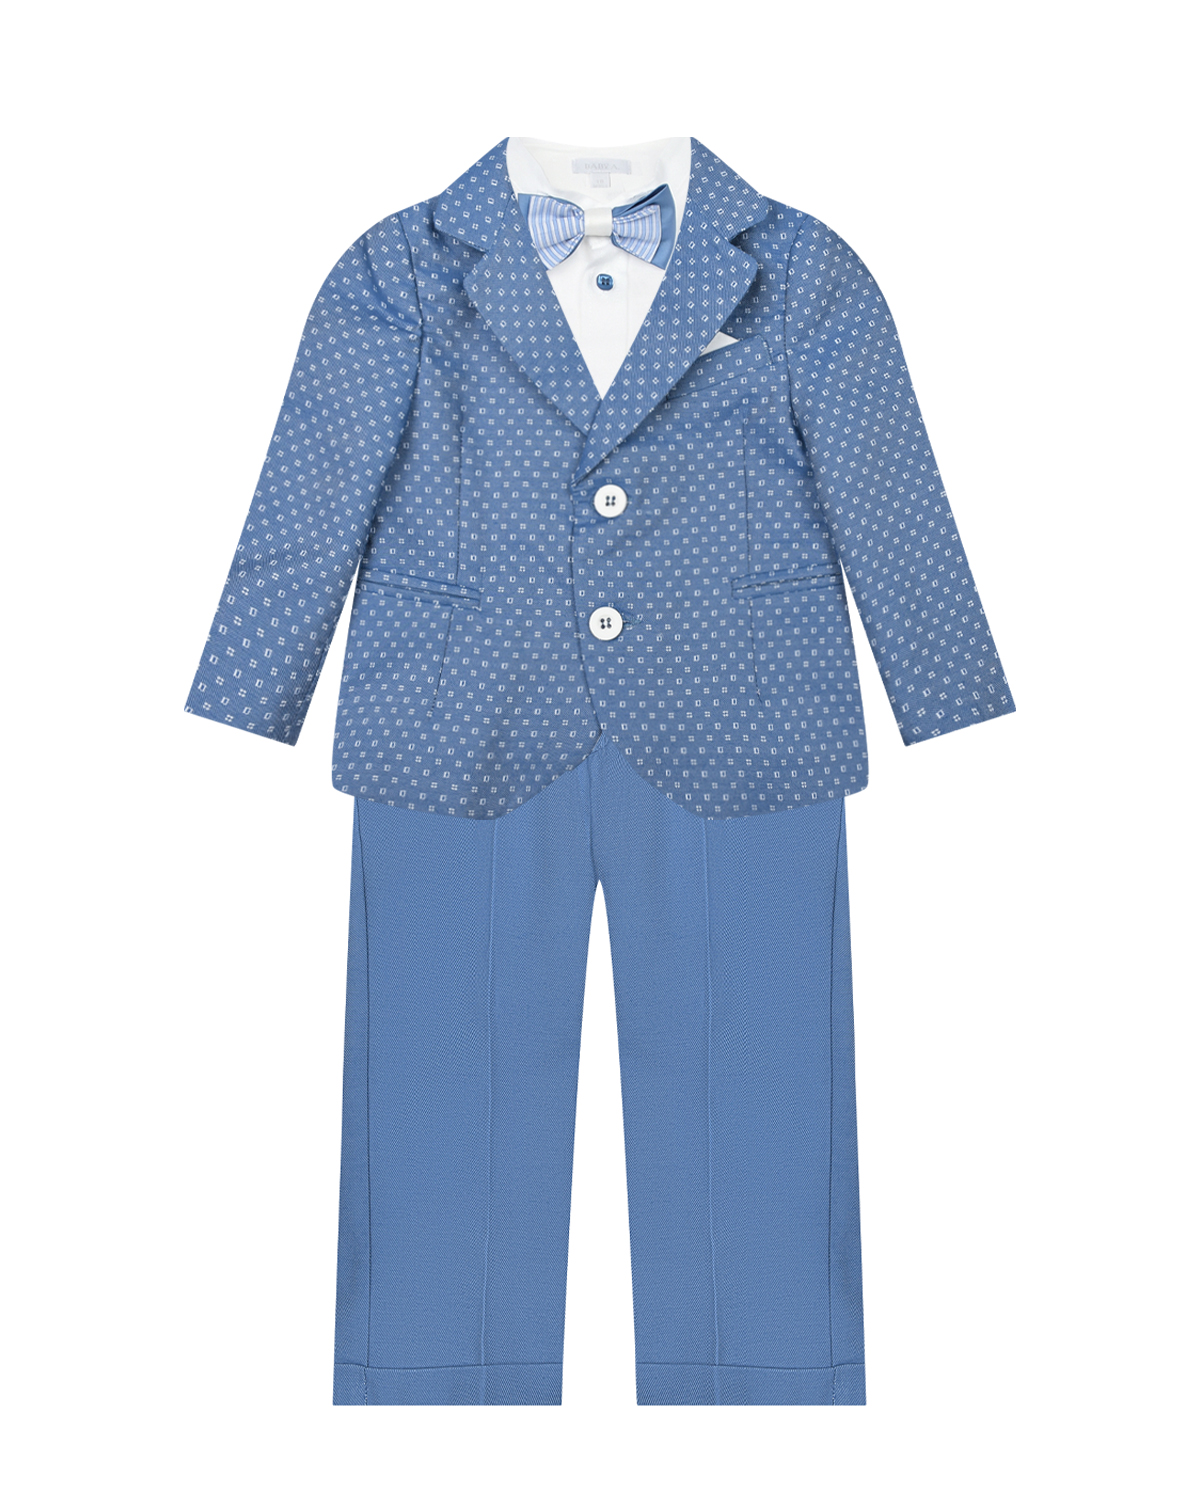 Комплект: пиджак, рубашка, брюки и галстук-бабочка Baby A, размер 80, цвет мультиколор